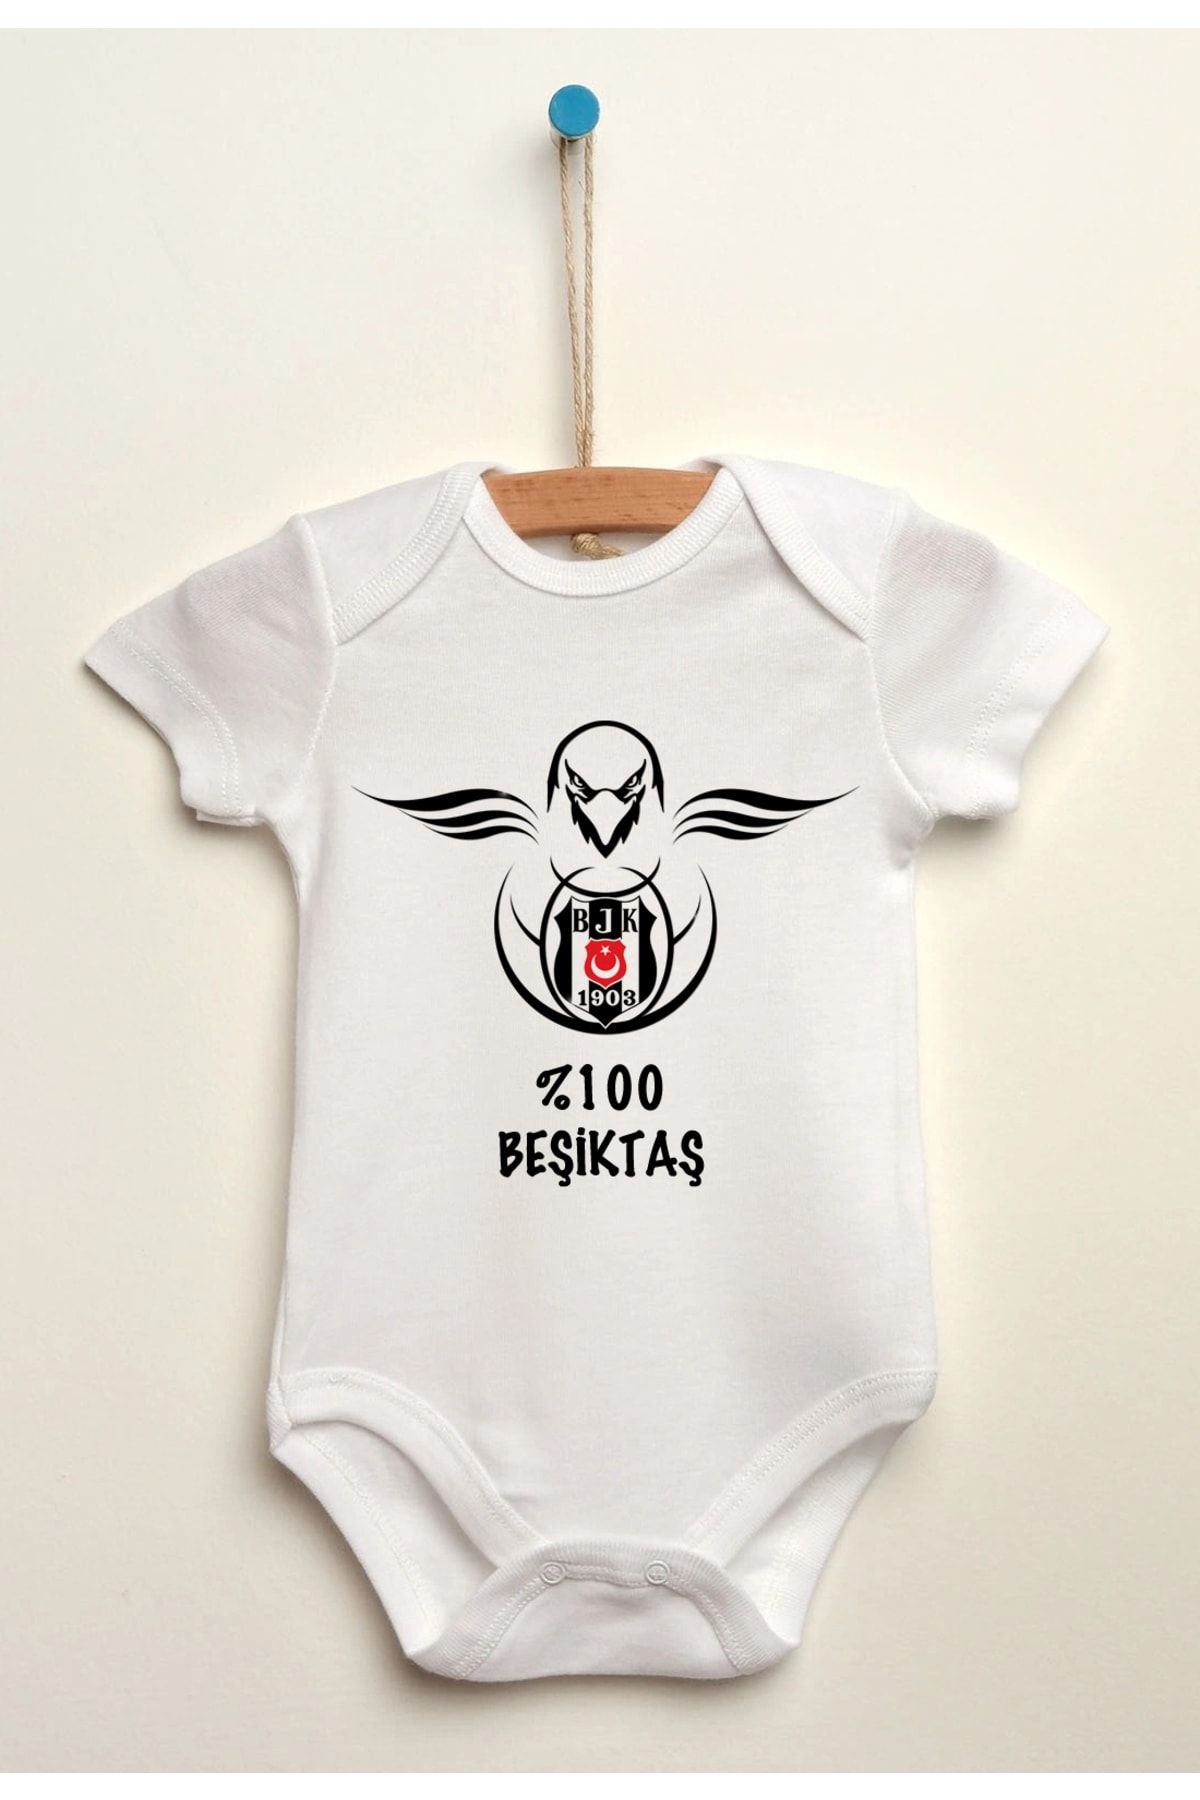 Beşiktaş Siyah Beyaz Organik Pamuklu Bebek Body Zıbın